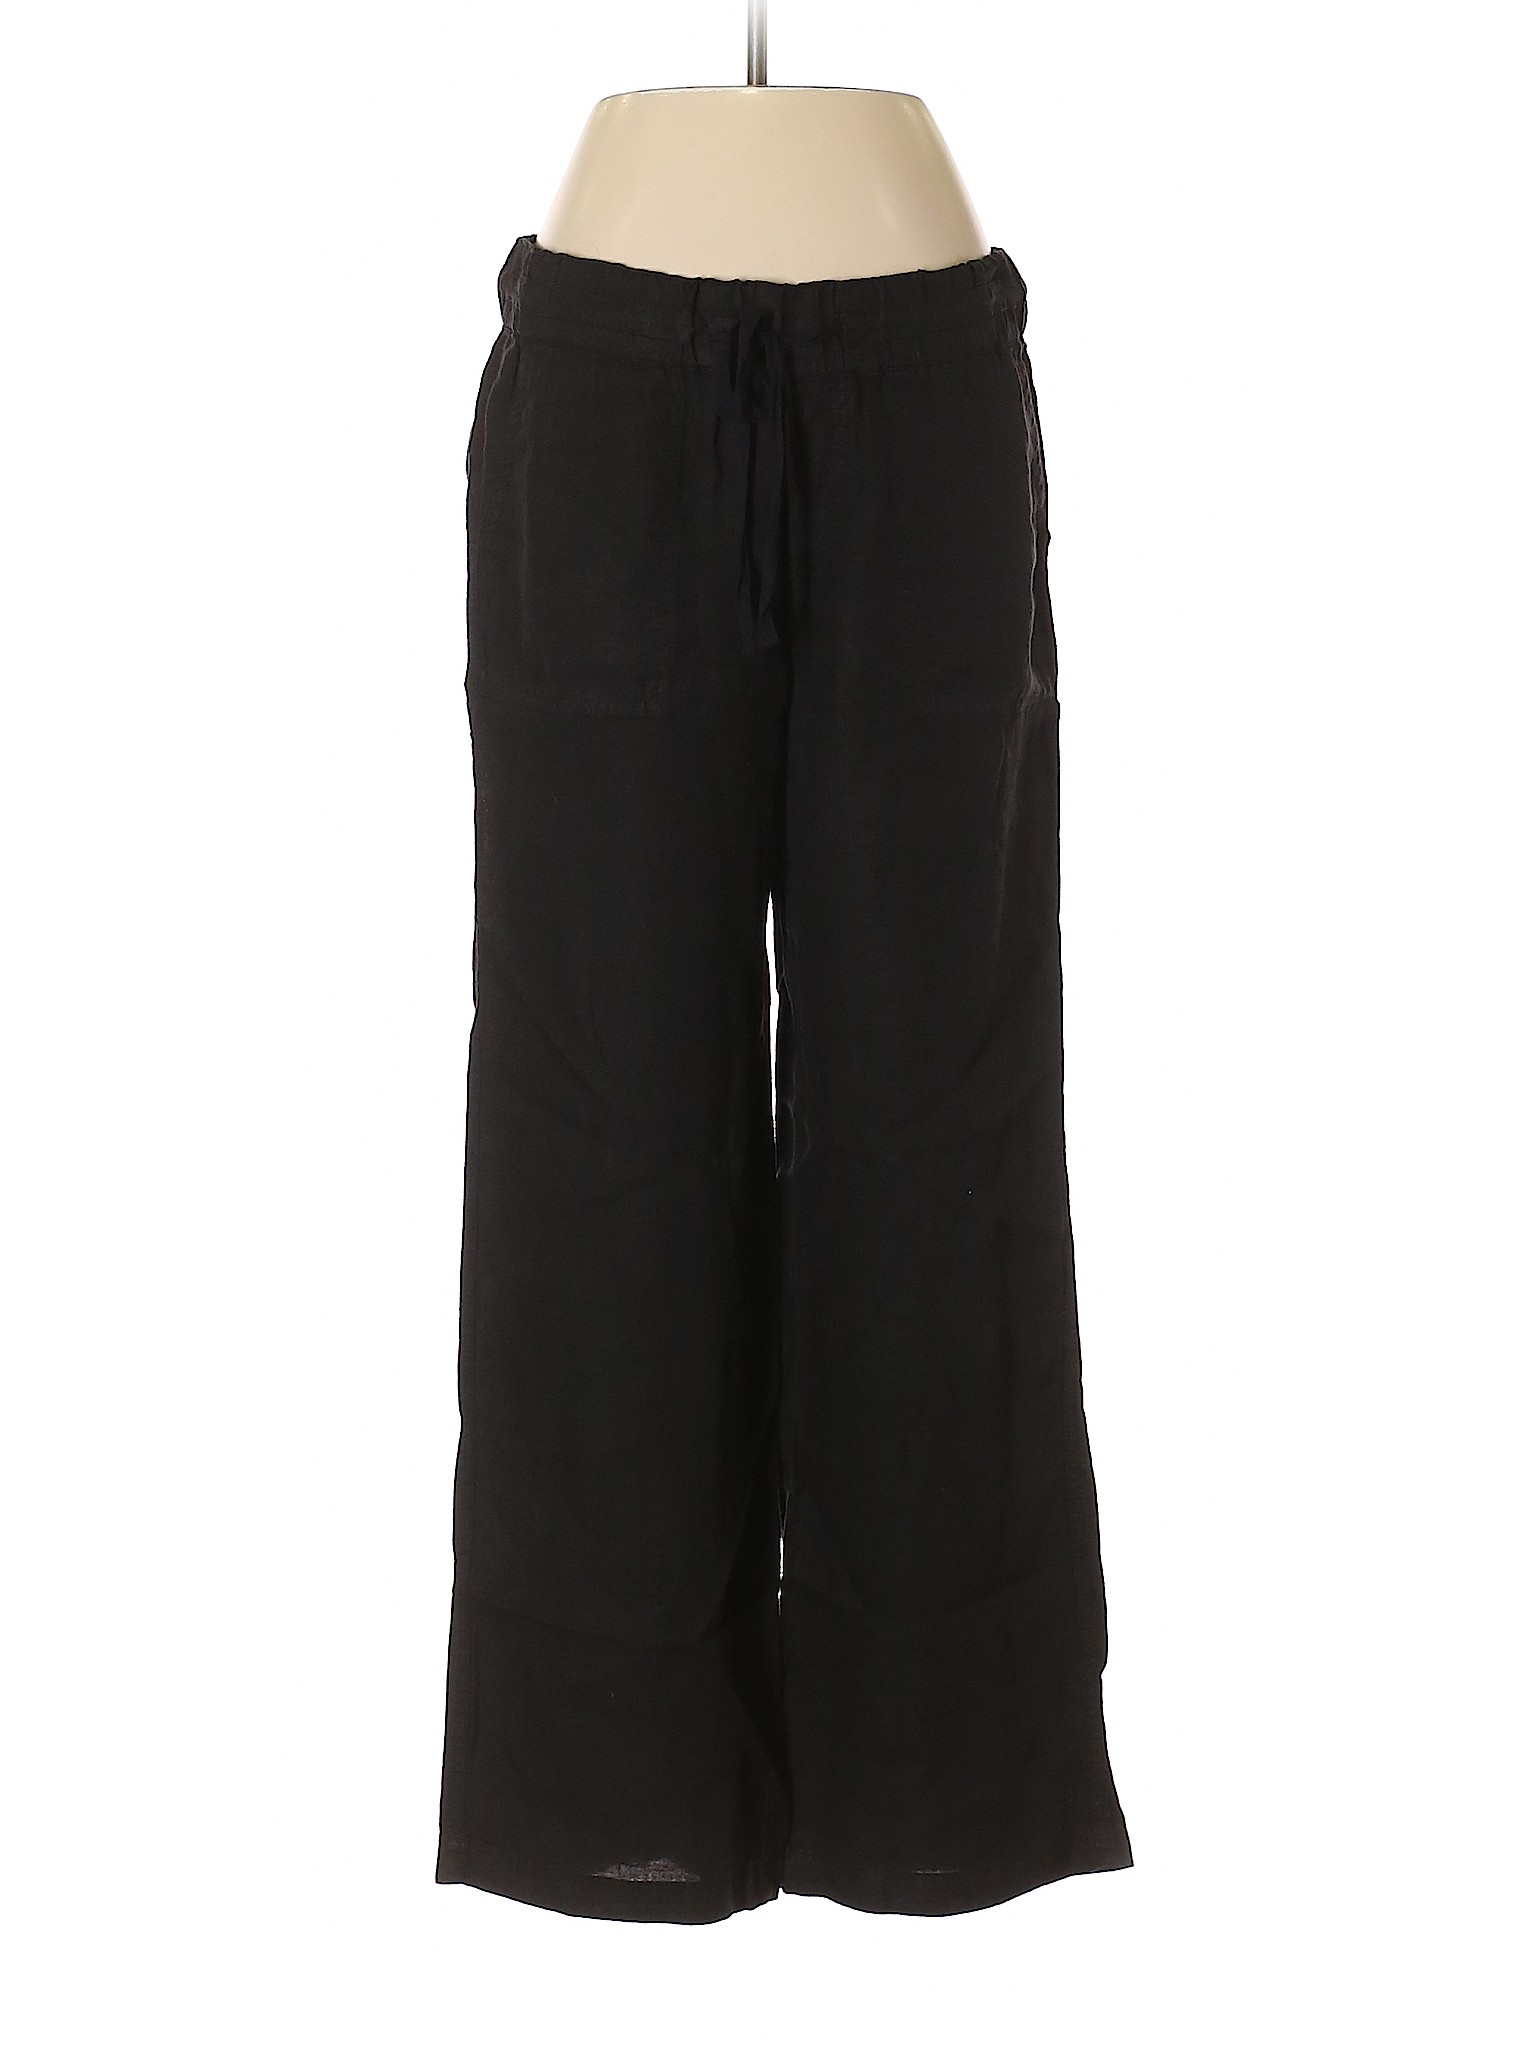 Caslon Women Black Linen Pants Sm Petite | eBay